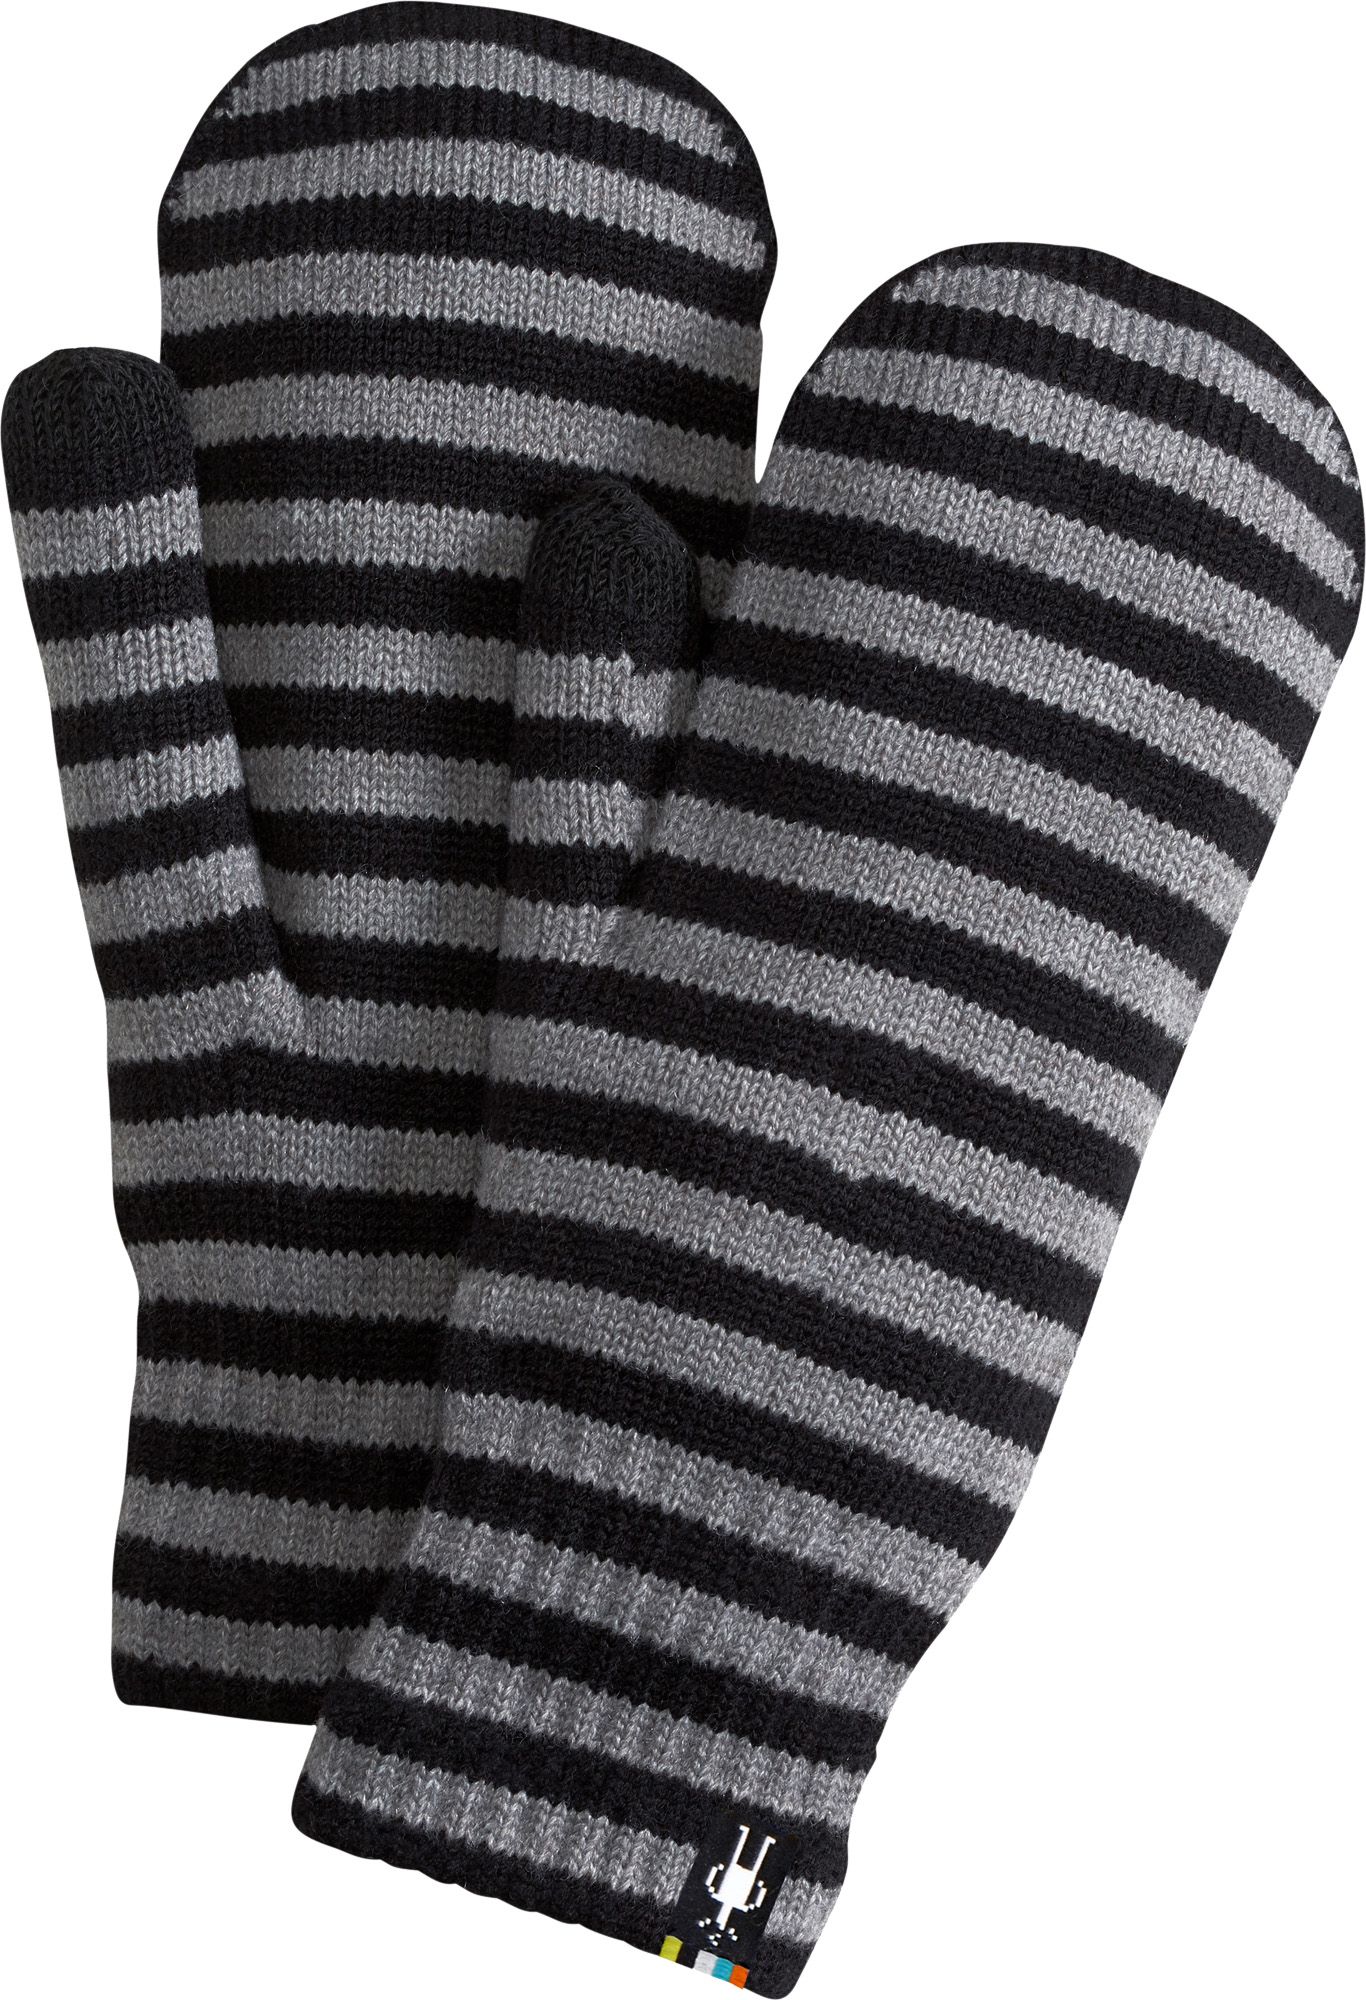 black knit mittens